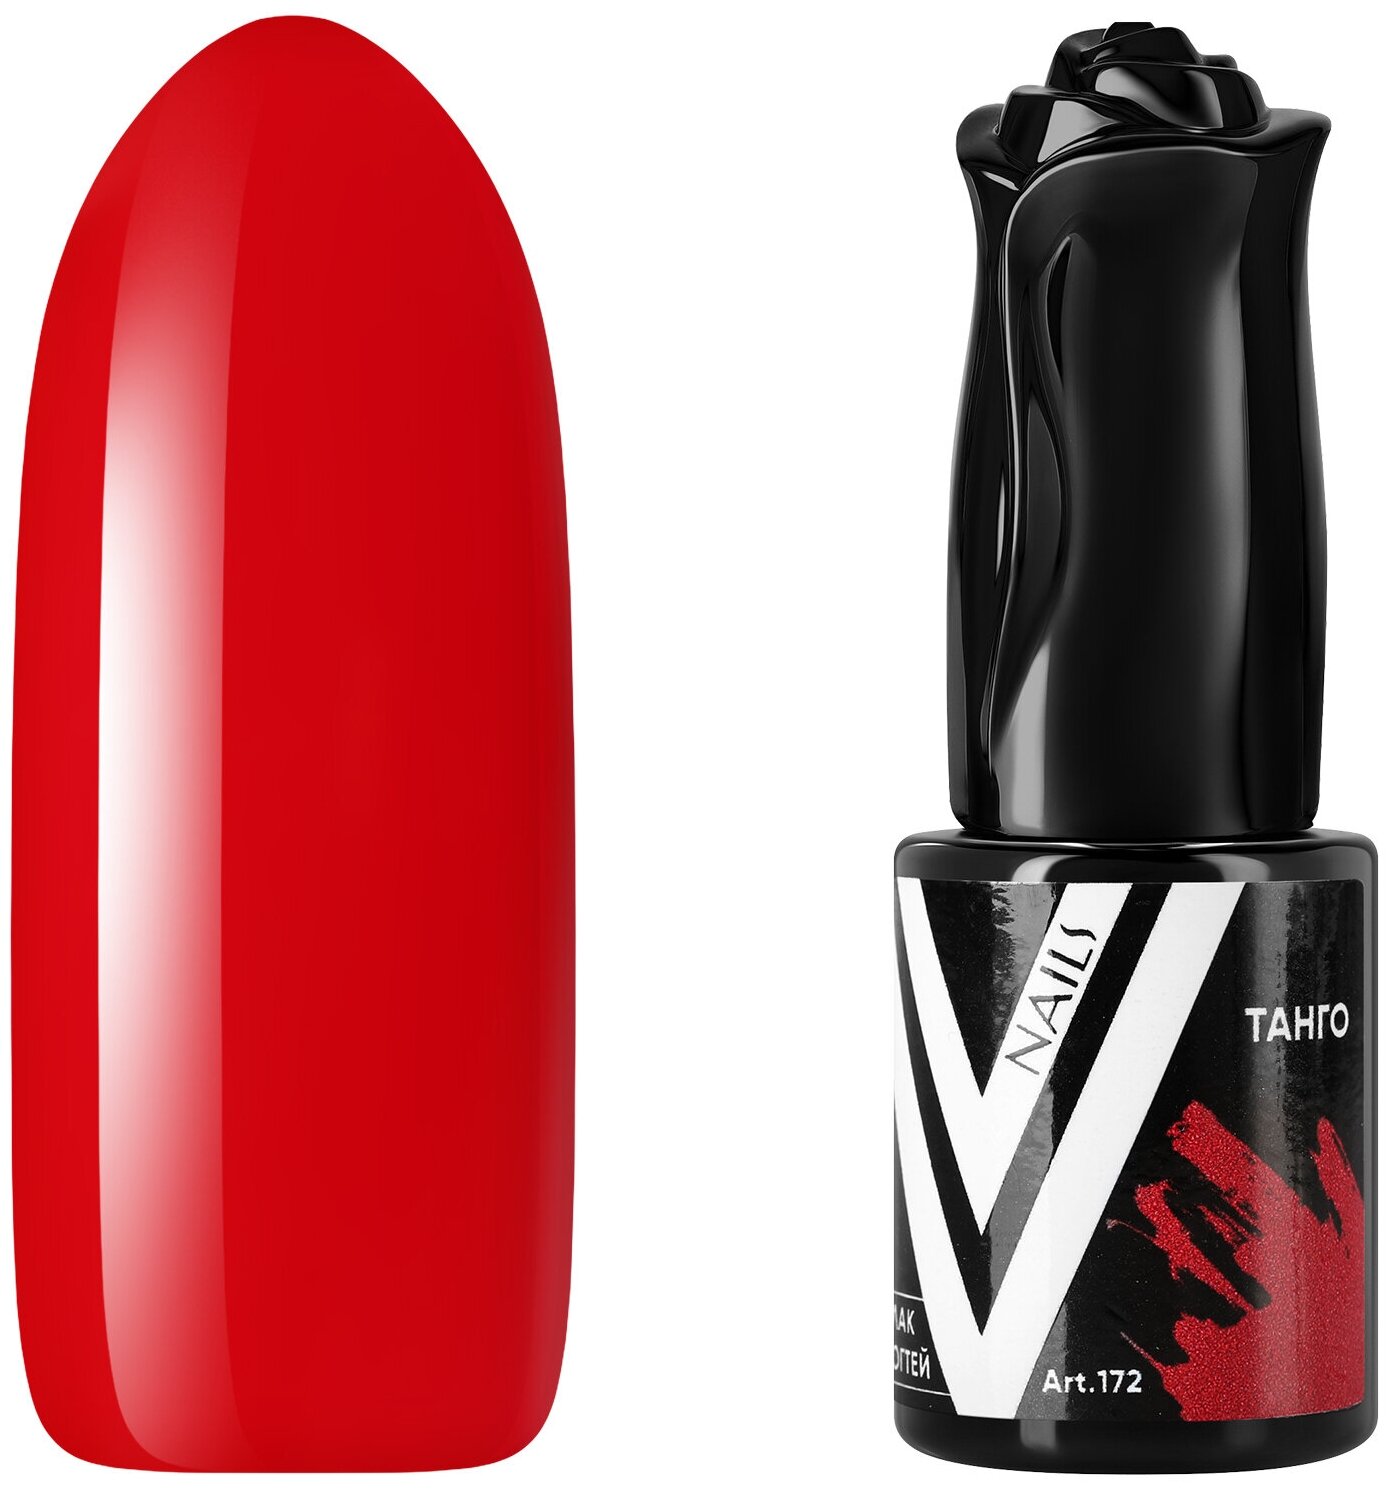 Гель-лак для ногтей Vogue Nails полупрозрачный самовыравнивающийся яркий, красный, 10 мл